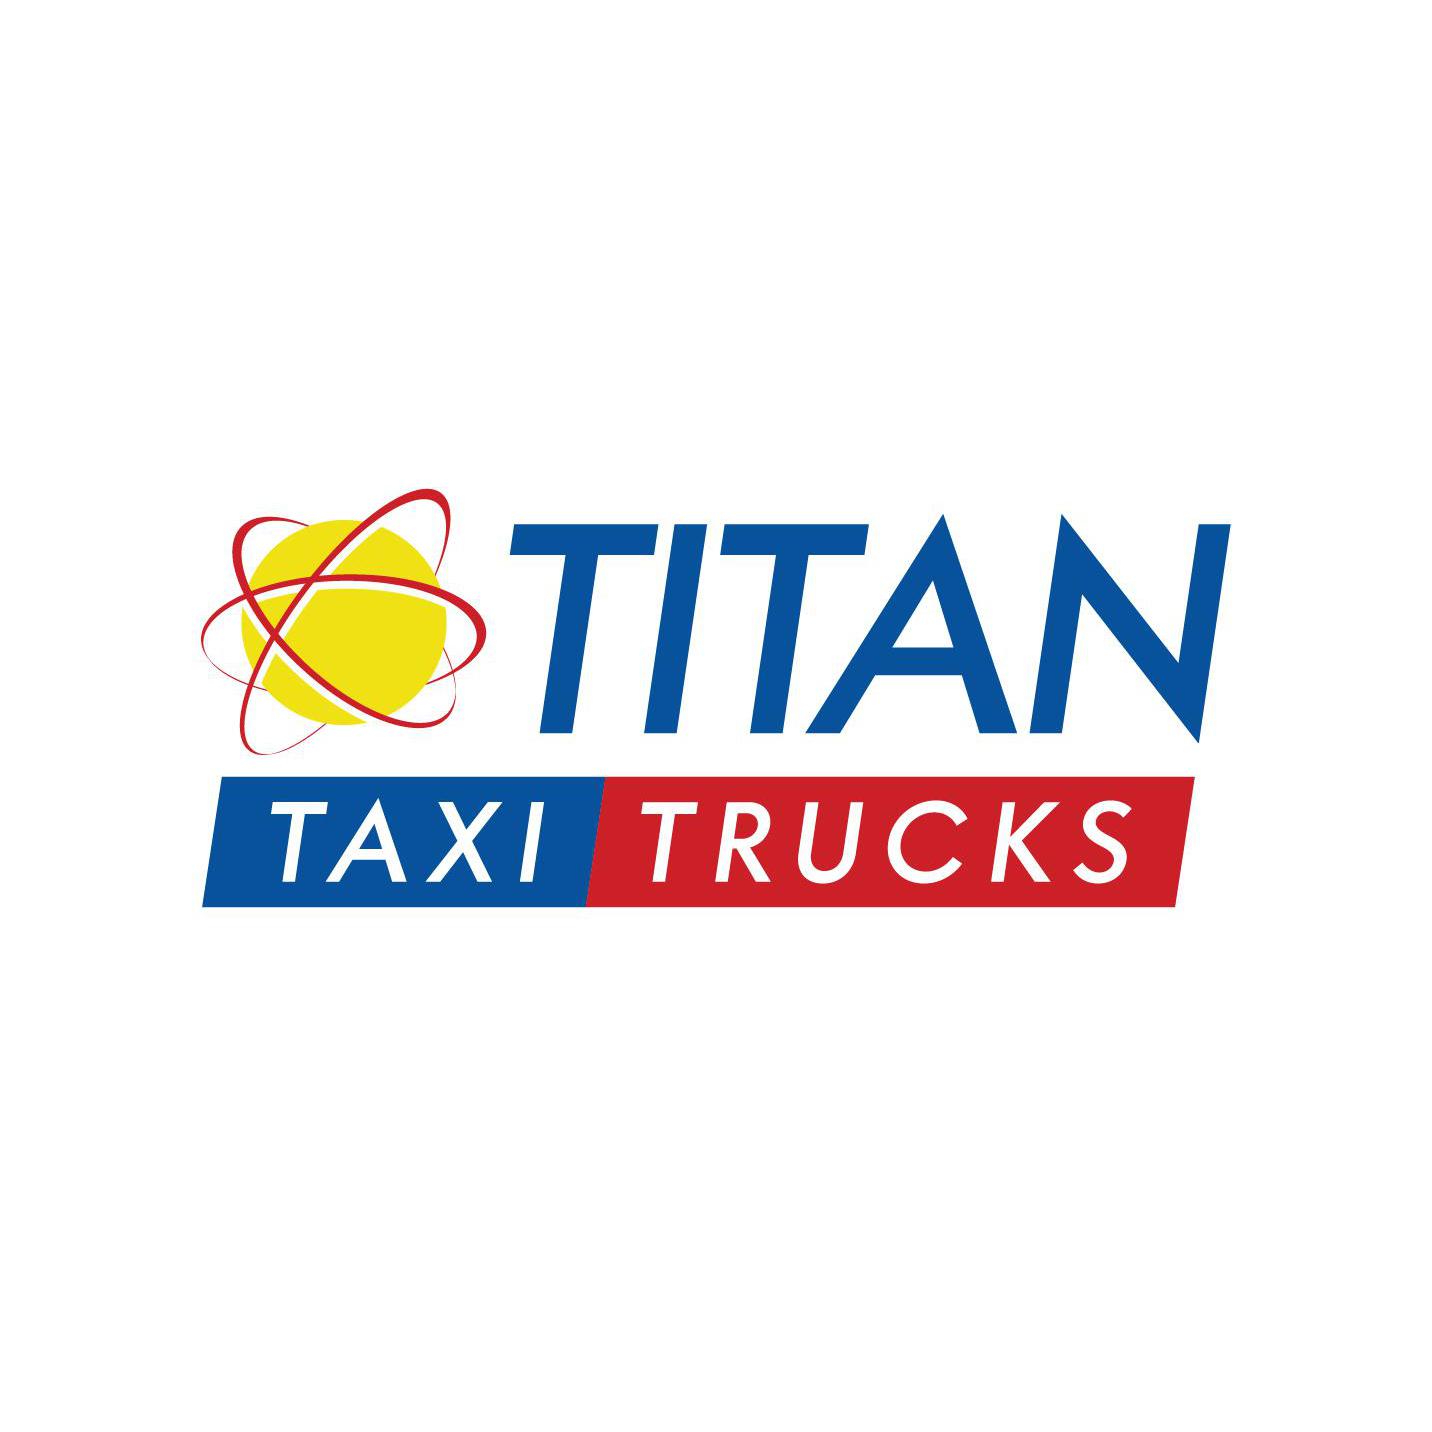 Titan Taxi Trucks Knox